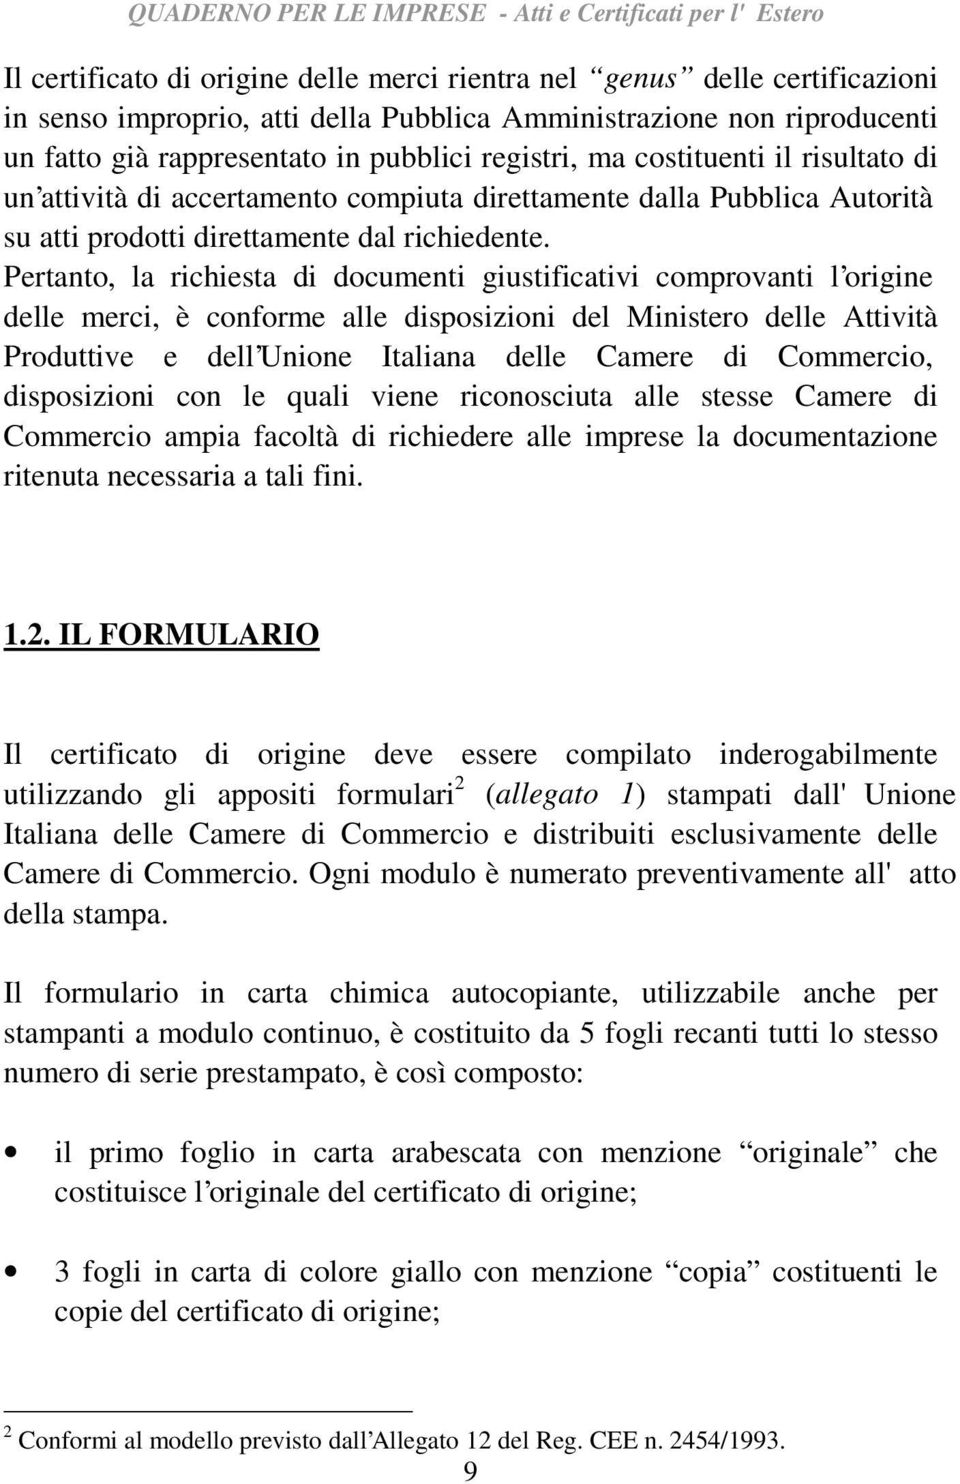 Pertanto, la richiesta di documenti giustificativi comprovanti l origine delle merci, è conforme alle disposizioni del Ministero delle Attività Produttive e dell Unione Italiana delle Camere di